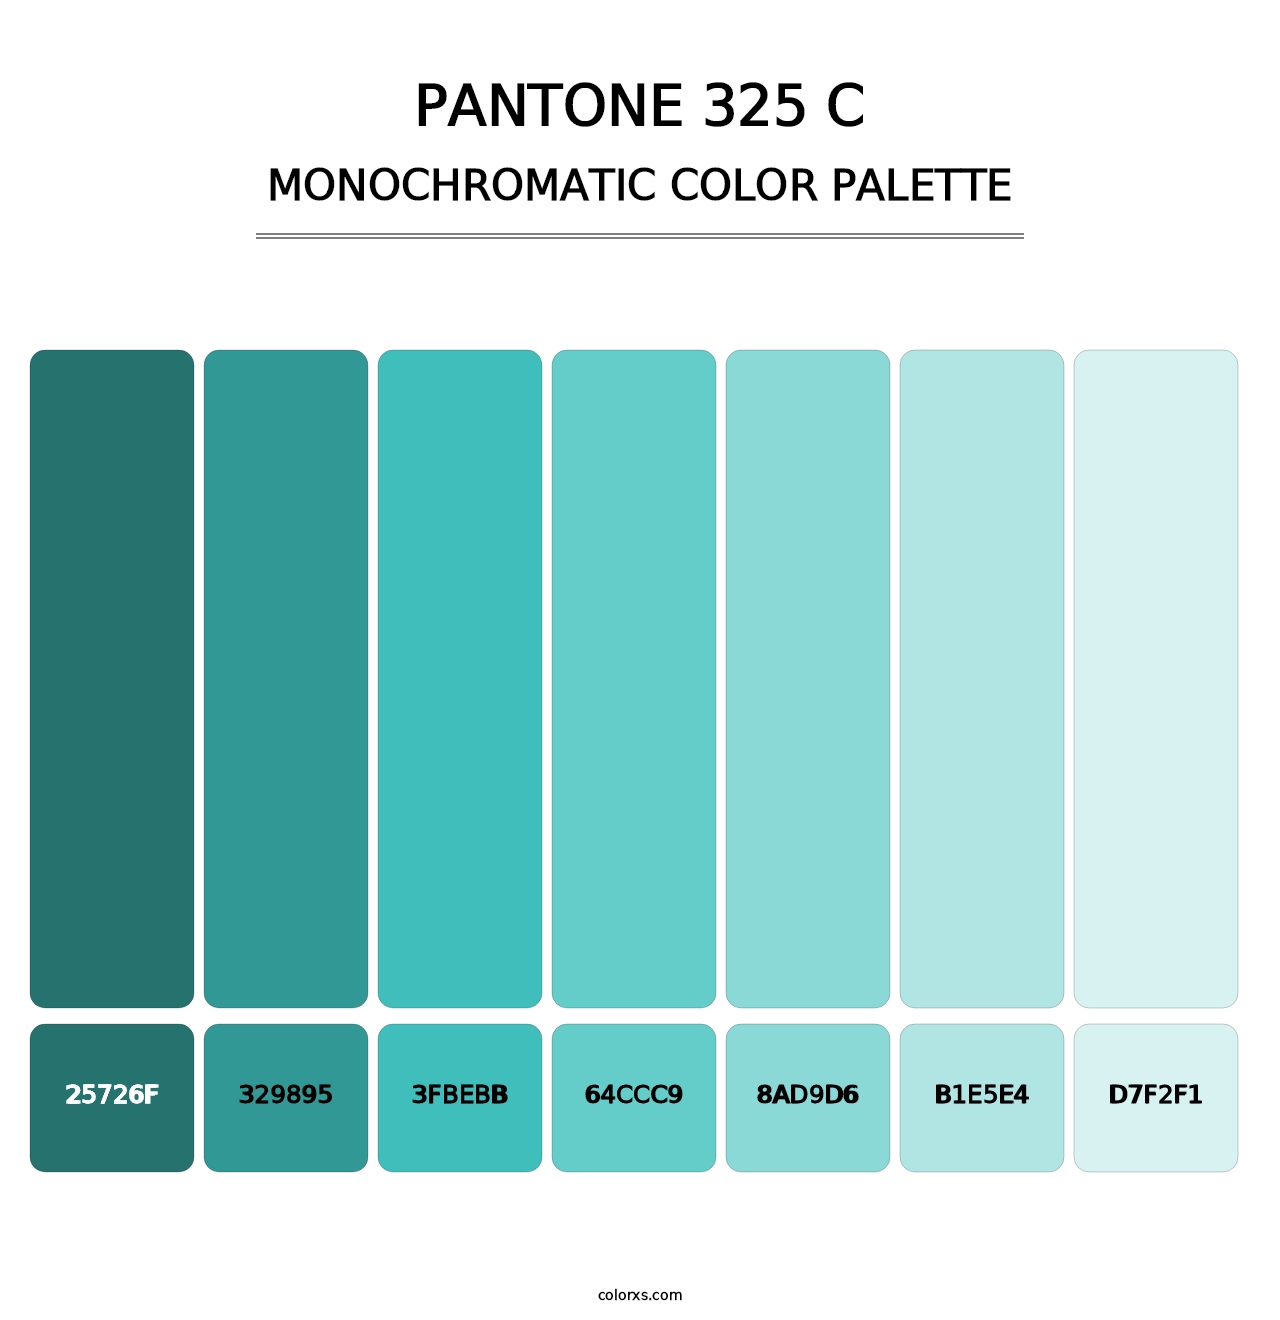 PANTONE 325 C - Monochromatic Color Palette